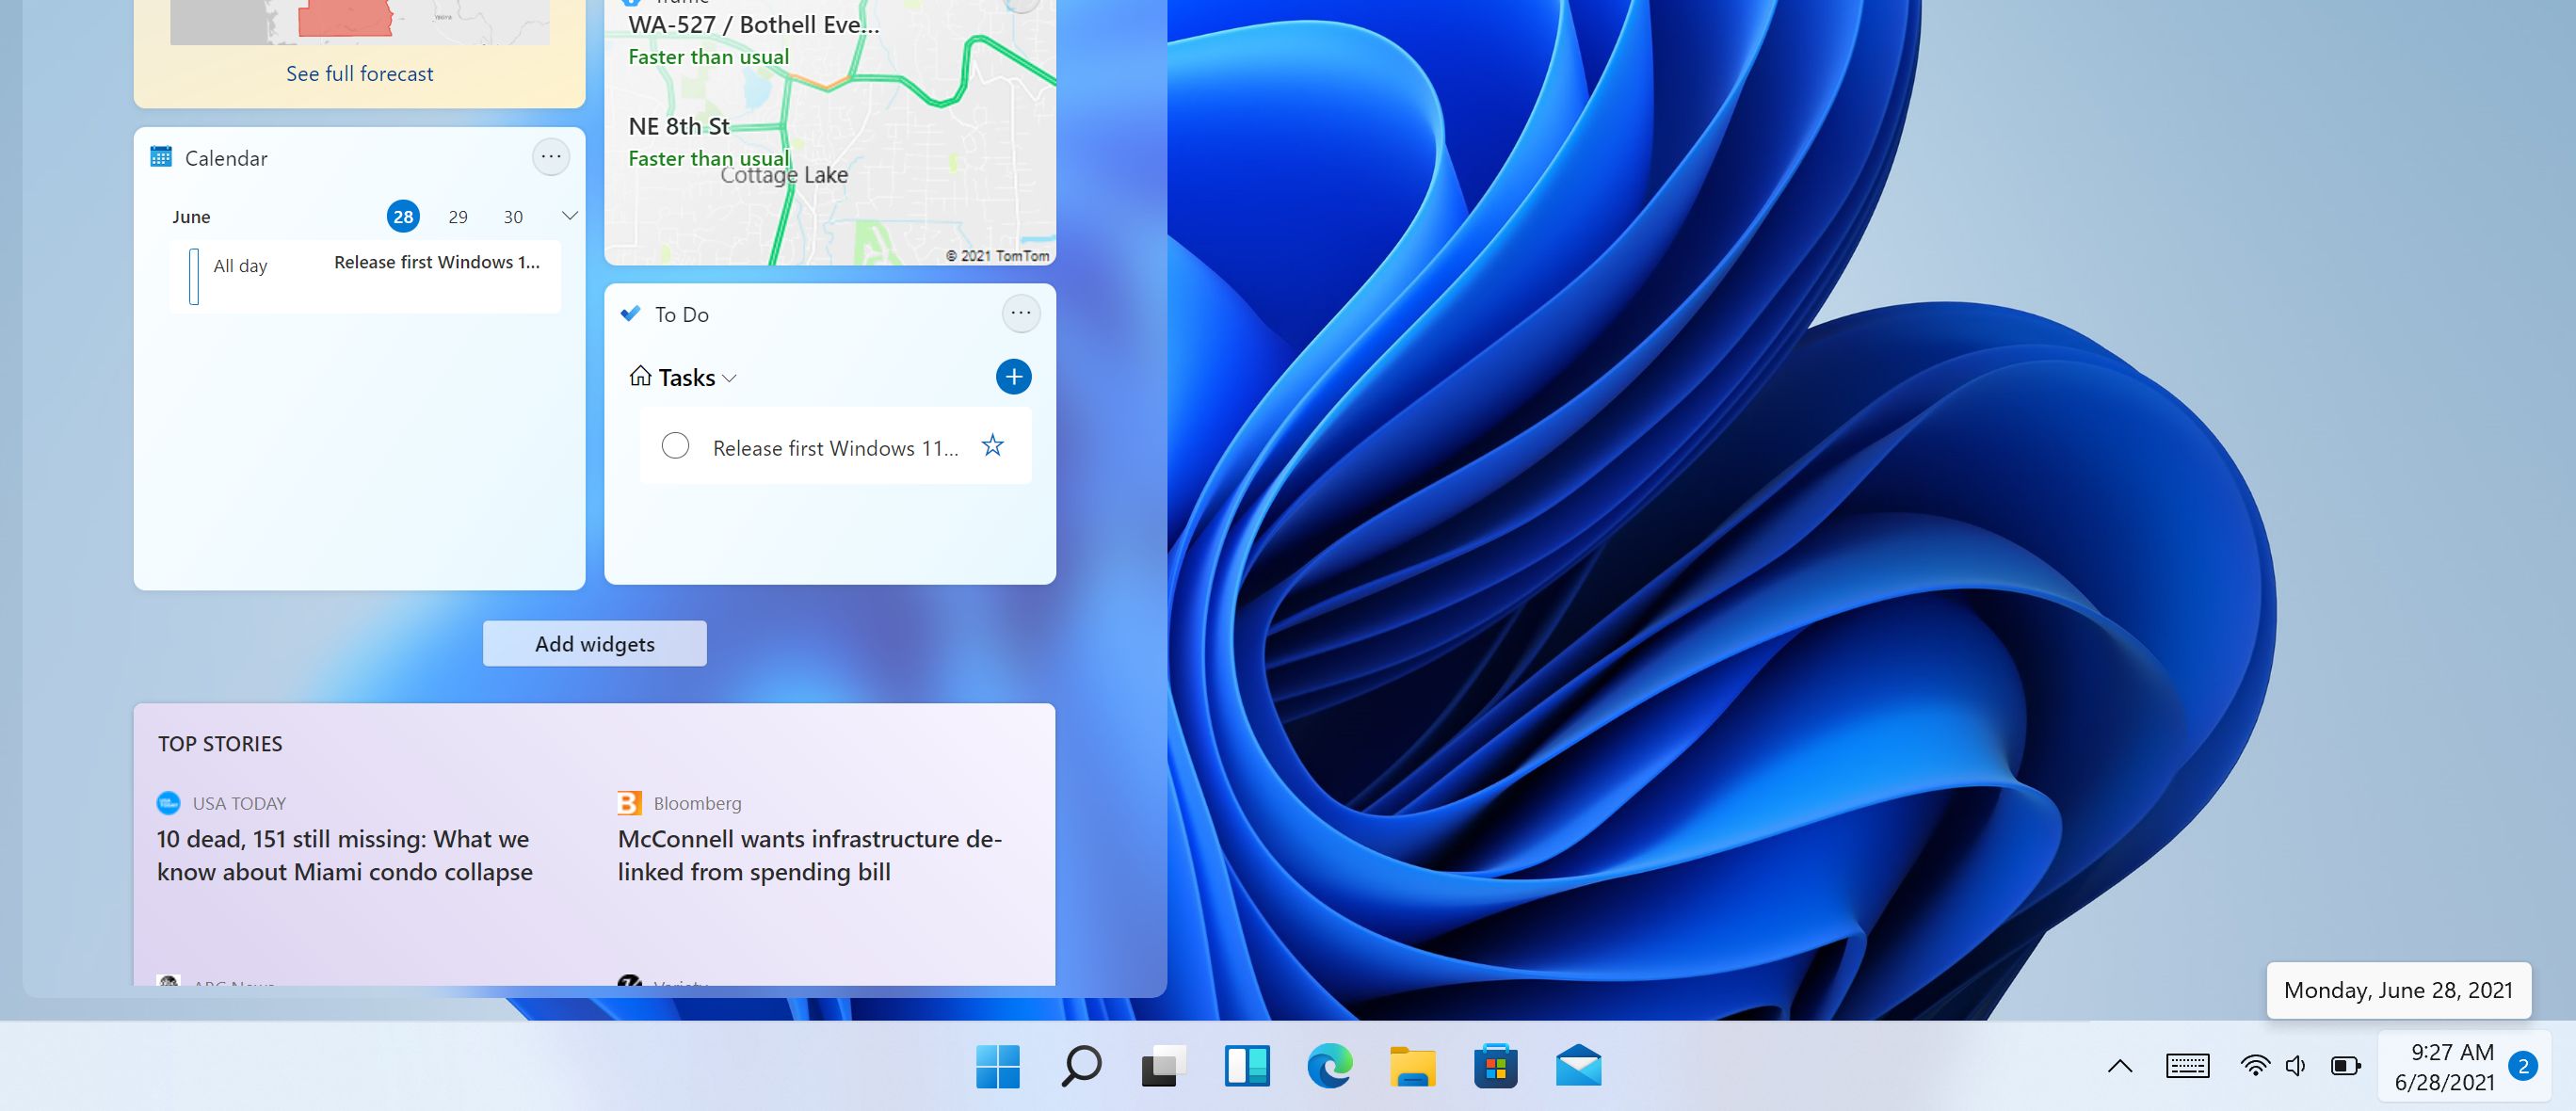 Microsoft releases Windows 11 Insider Preview - GSMArena.com news